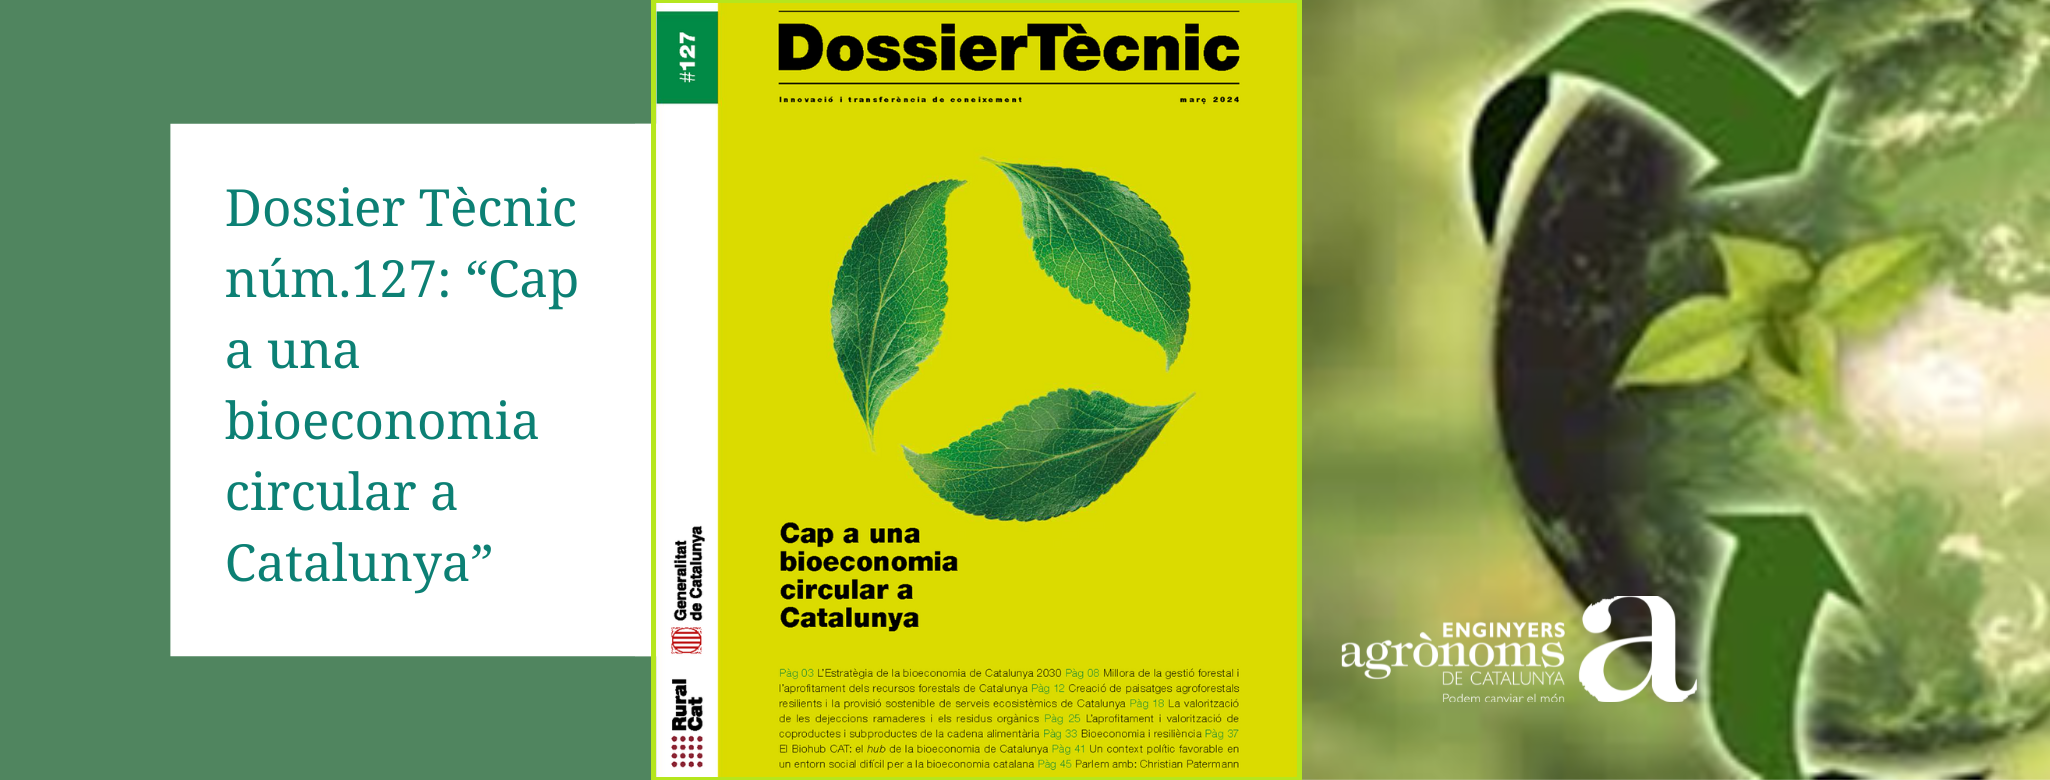 Dossier Tècnic núm.127: “Cap a una bioeconomia circular a Catalunya”